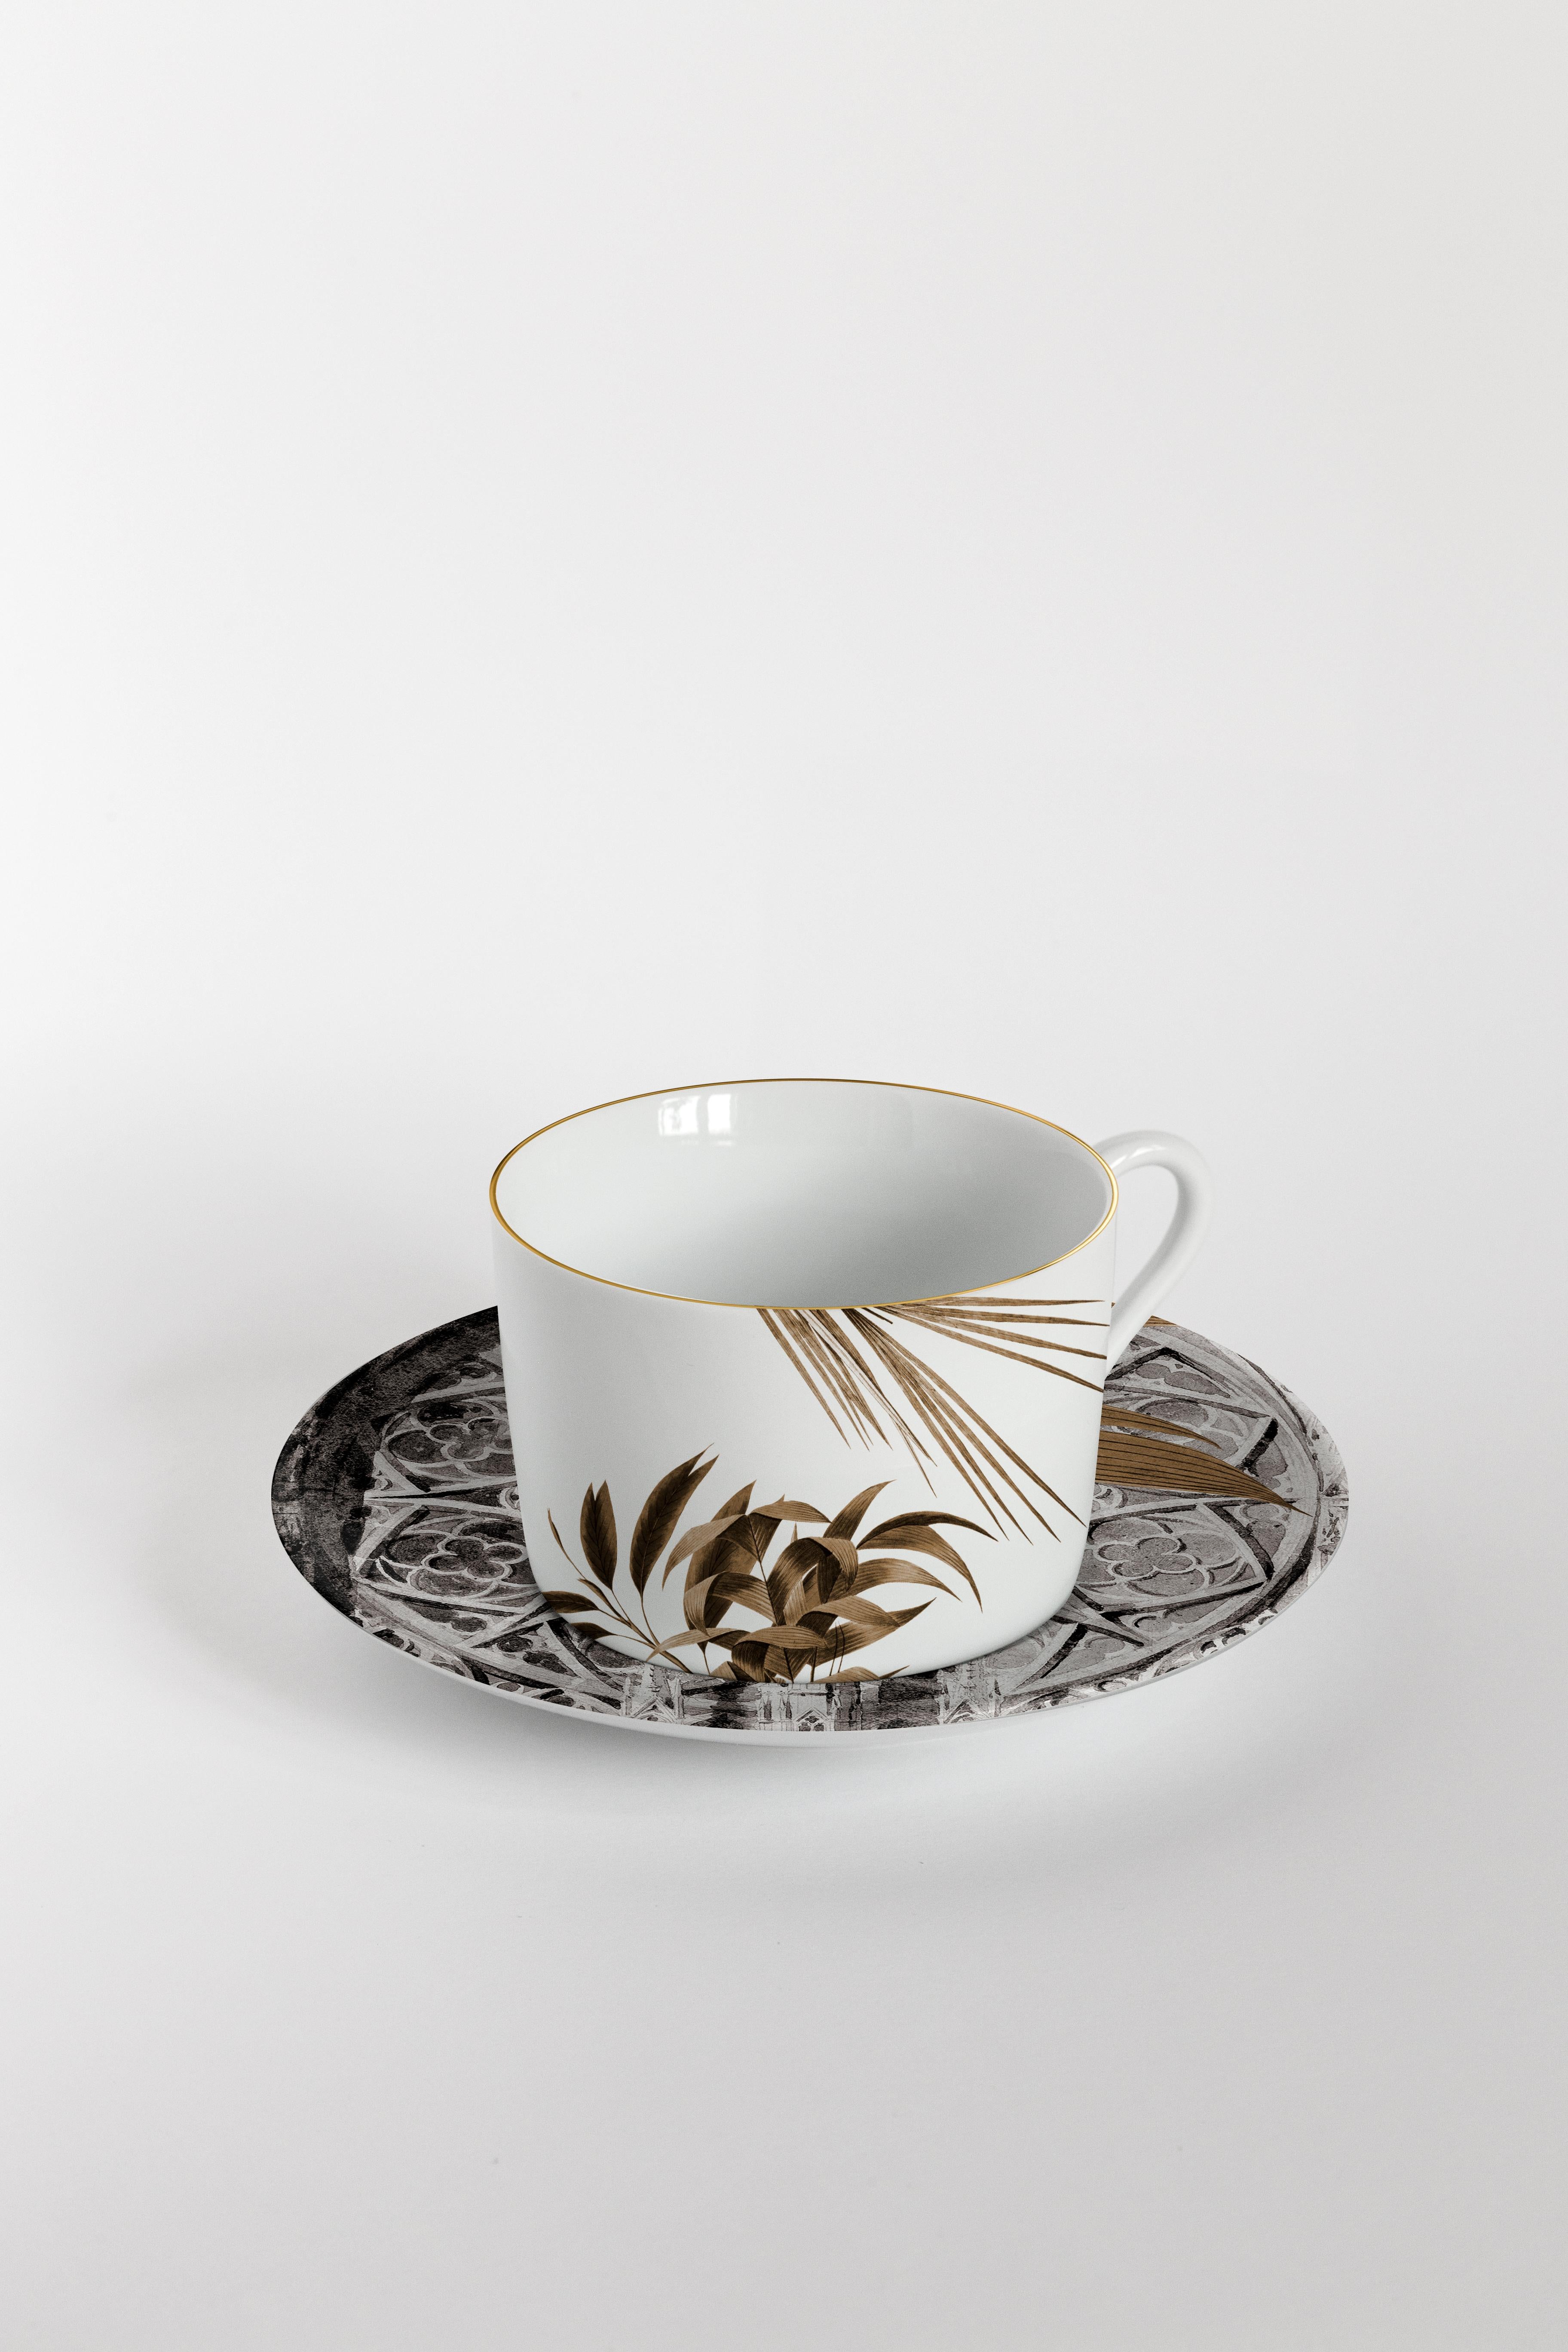 Italian Il Duomo Che Non C'è, Six Contemporary Decorated Tea Cups with Plates For Sale